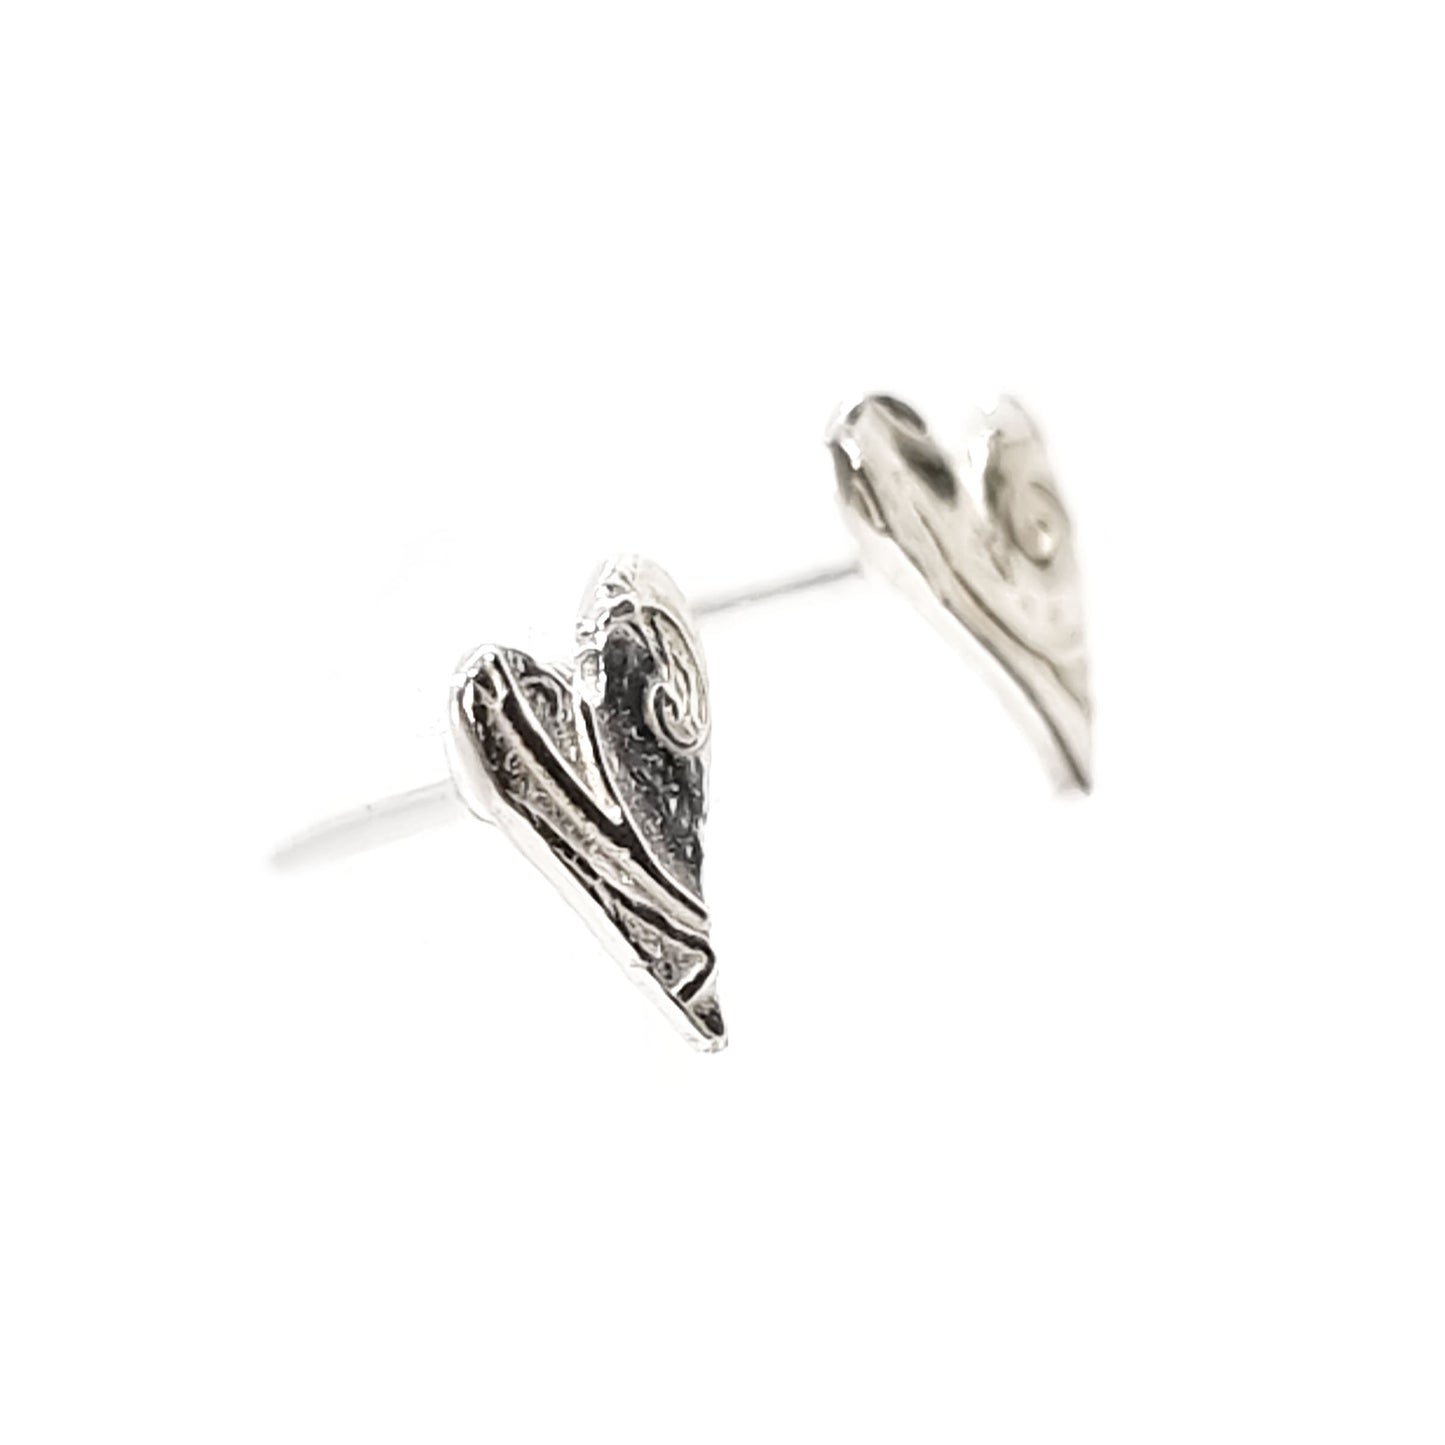 Silver asymmetrical heart stud earrings with a swirl pattern.